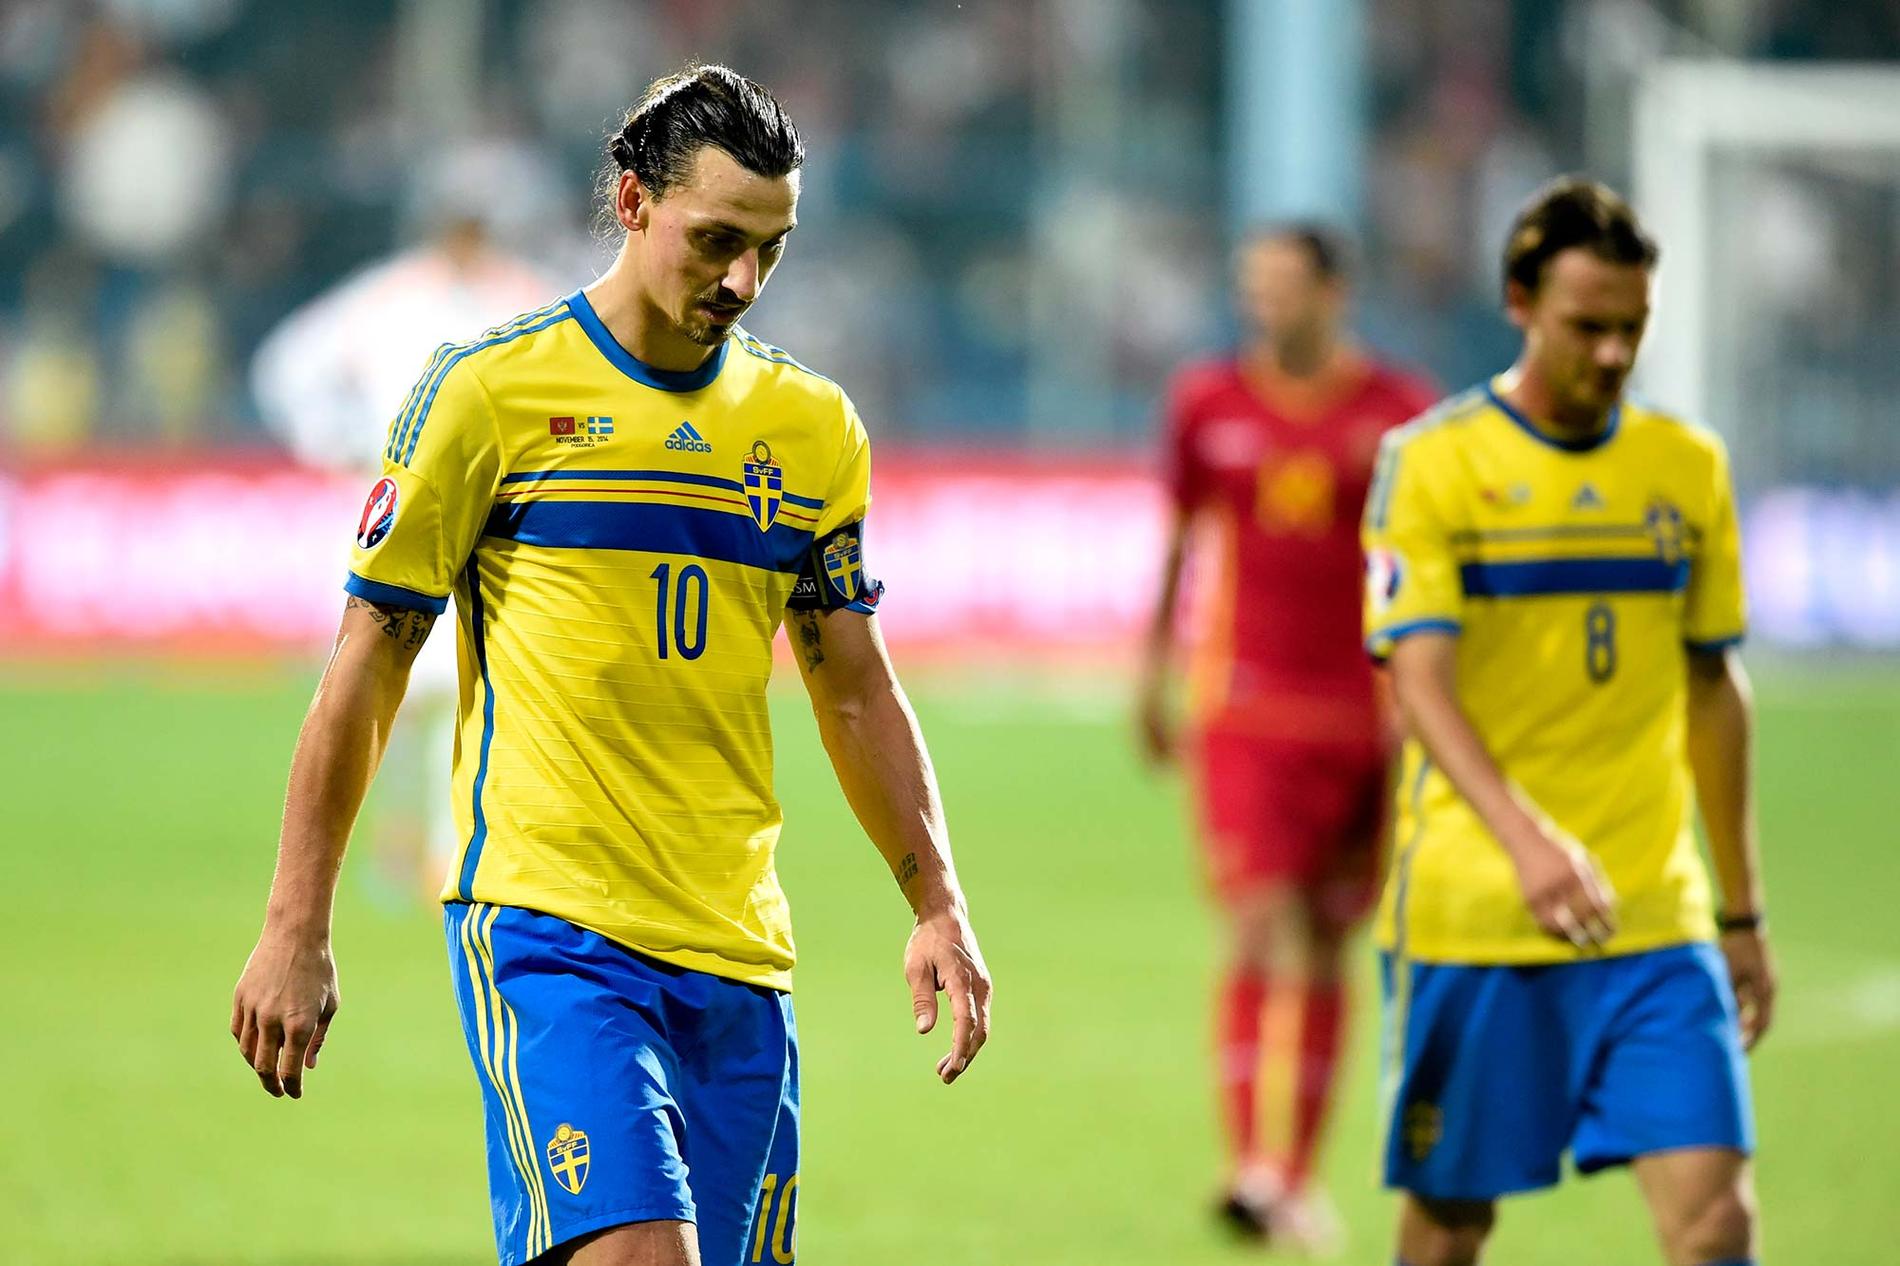 Deppigt värre, Sveriges chanser att nå VM 2018 ser väldigt små ut.